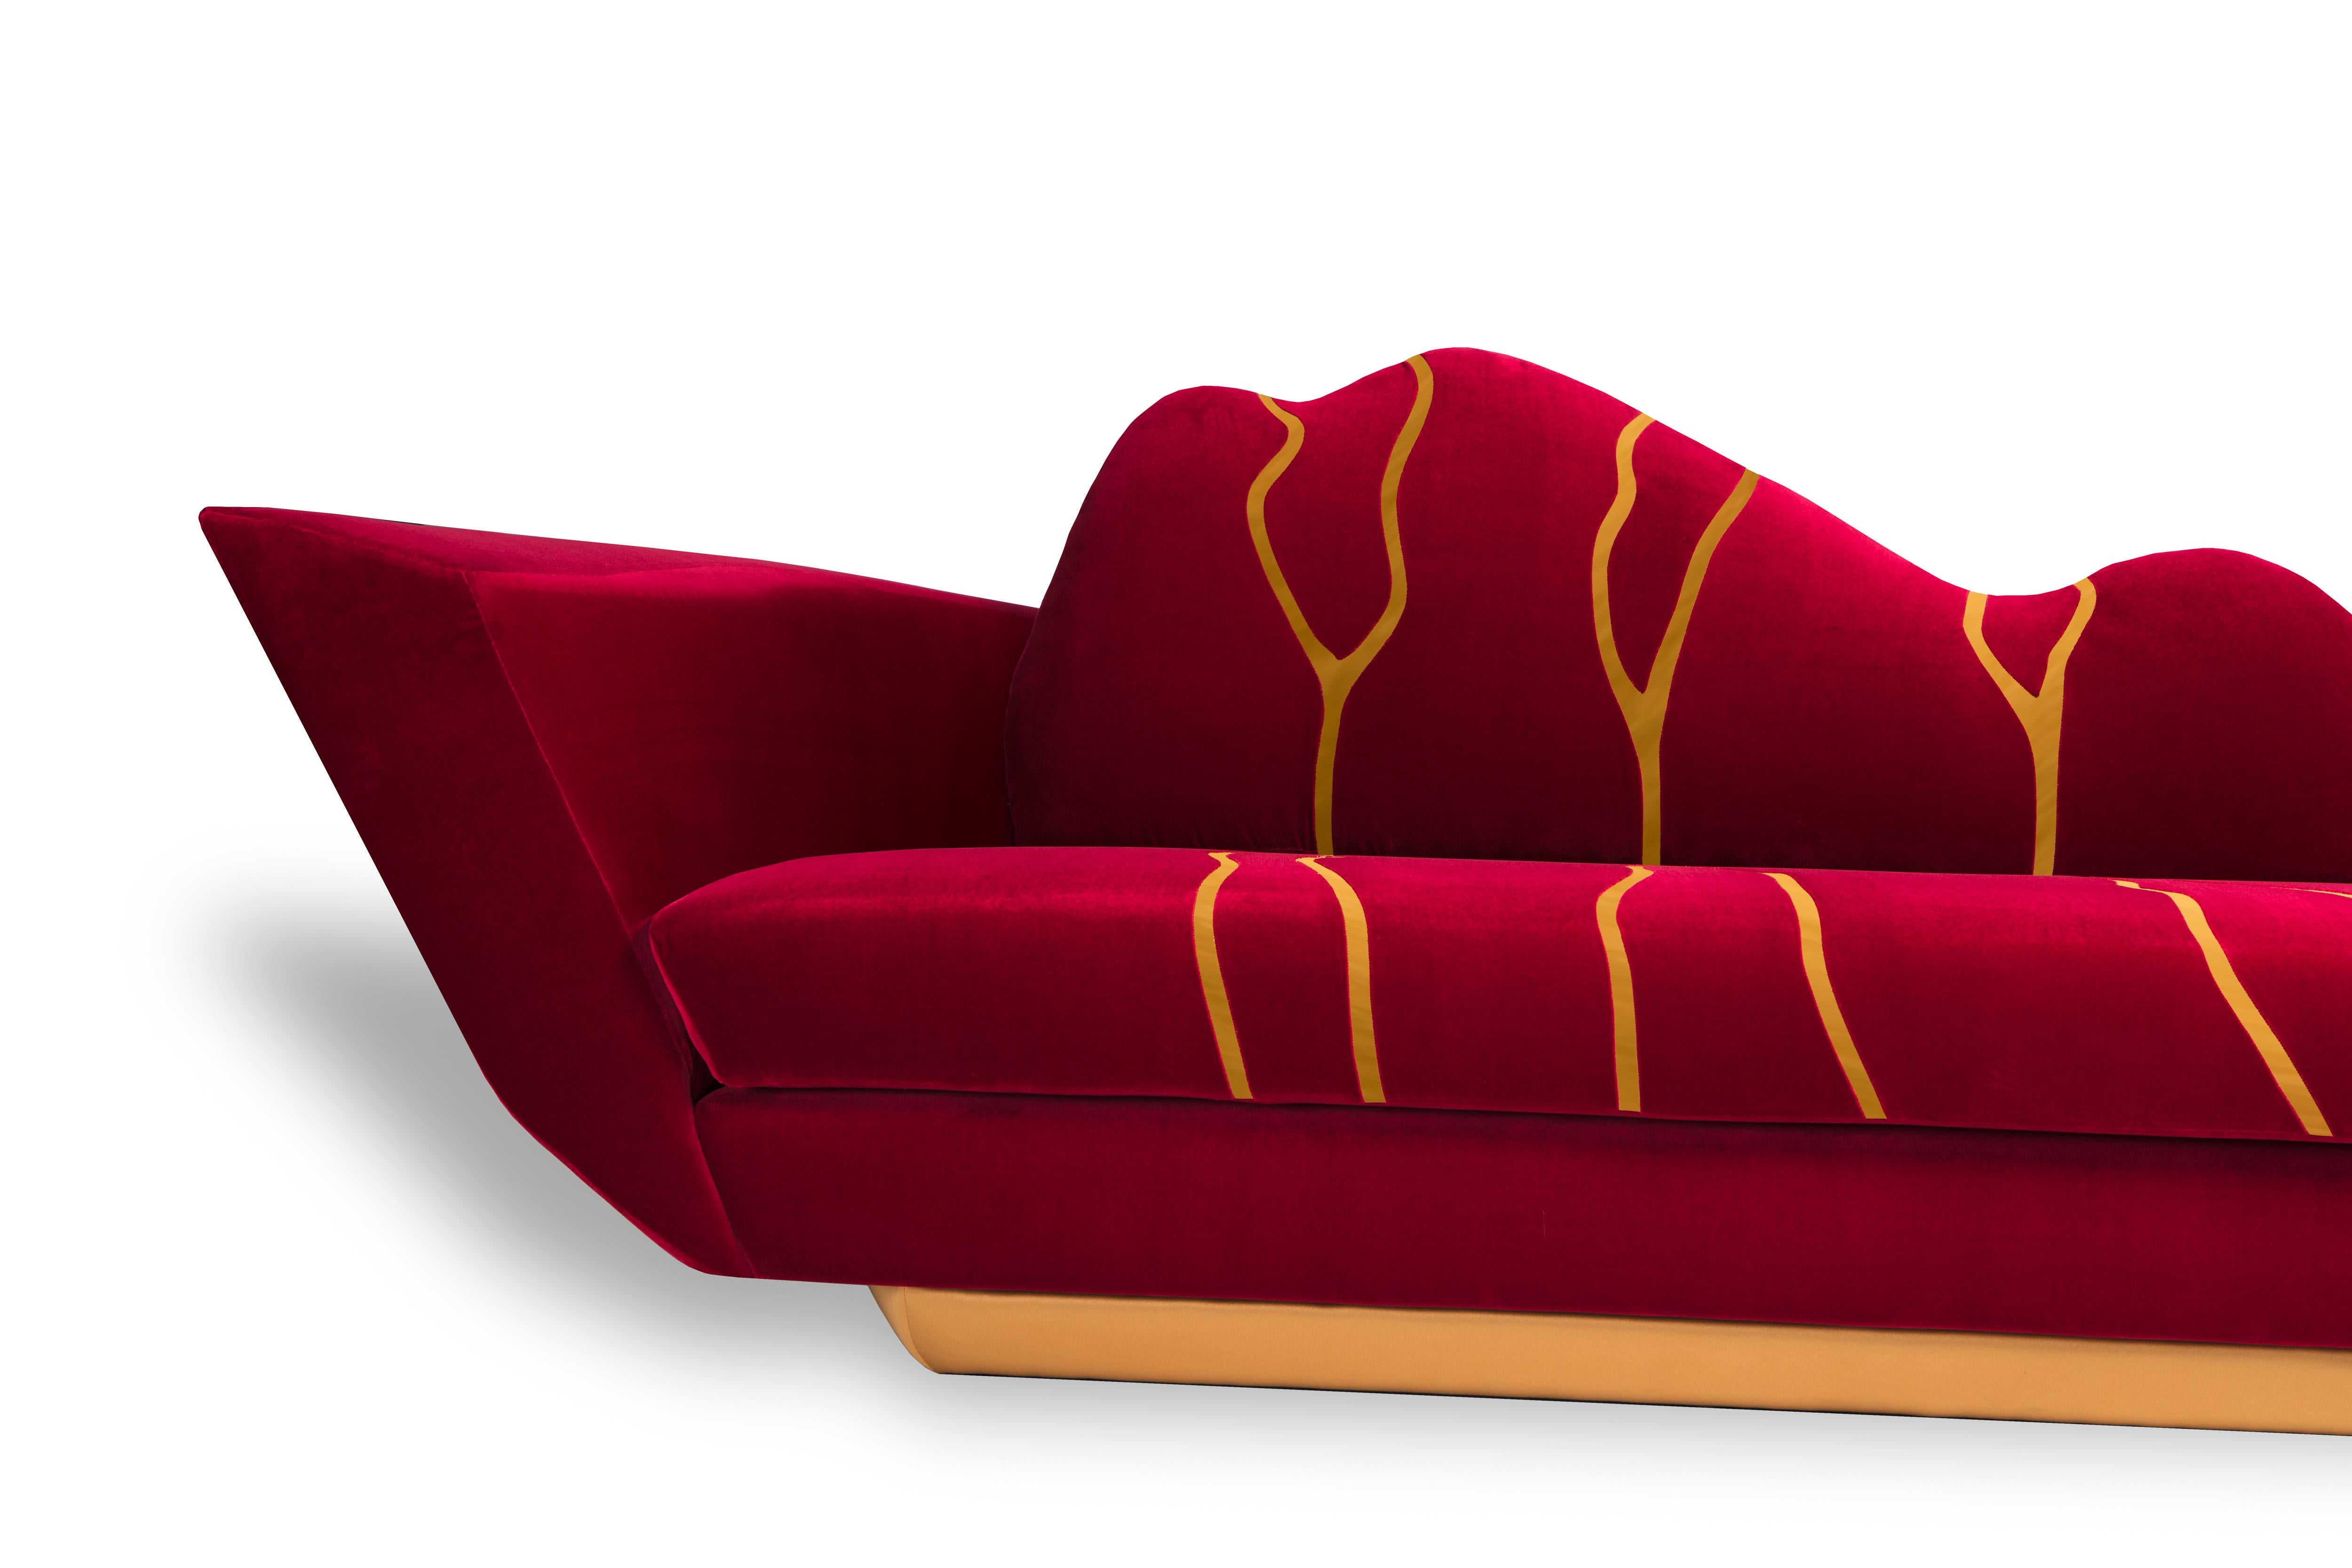 Die Erinnerung an dieses Sofa inspiriert uns in seiner Schlichtheit und verweist uns auf einen raffinierten Sinn für Eleganz und Zeitgenossenschaft. Das Sofa Kintsukuroi hat ein ikonisches Design und passt perfekt zu modernen Innenräumen.